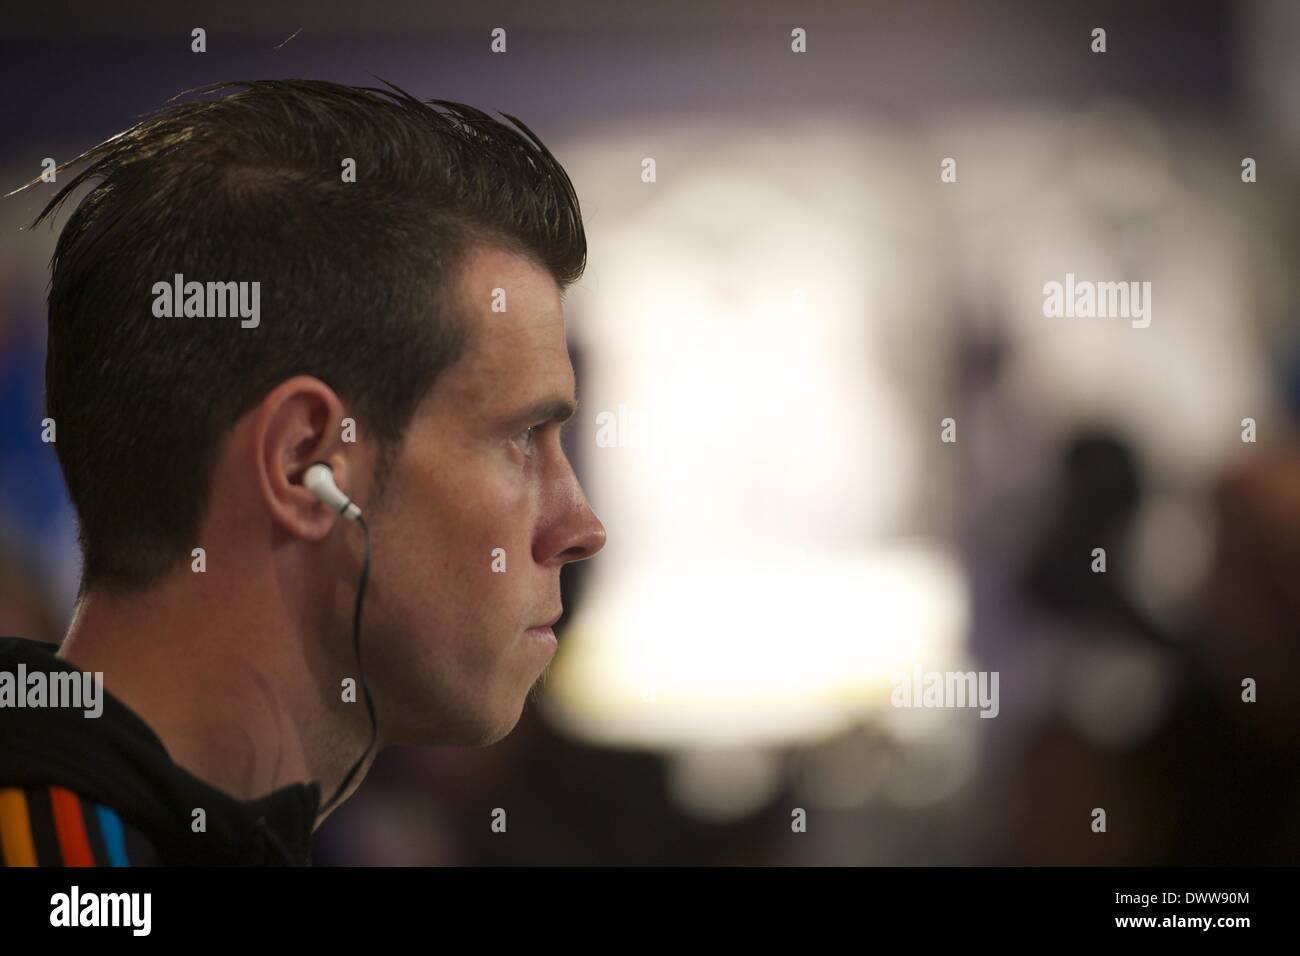 Madrid, España. 13 Mar, 2014. Gareth Bale presenta sus nuevas botas Adidas  Predator en Adidas Santiago Bernabeu Almacenar el 13 de marzo de 2014 en  Madrid: Jack crédito Abuin/ZUMAPRESS.com/Alamy Live News Fotografía